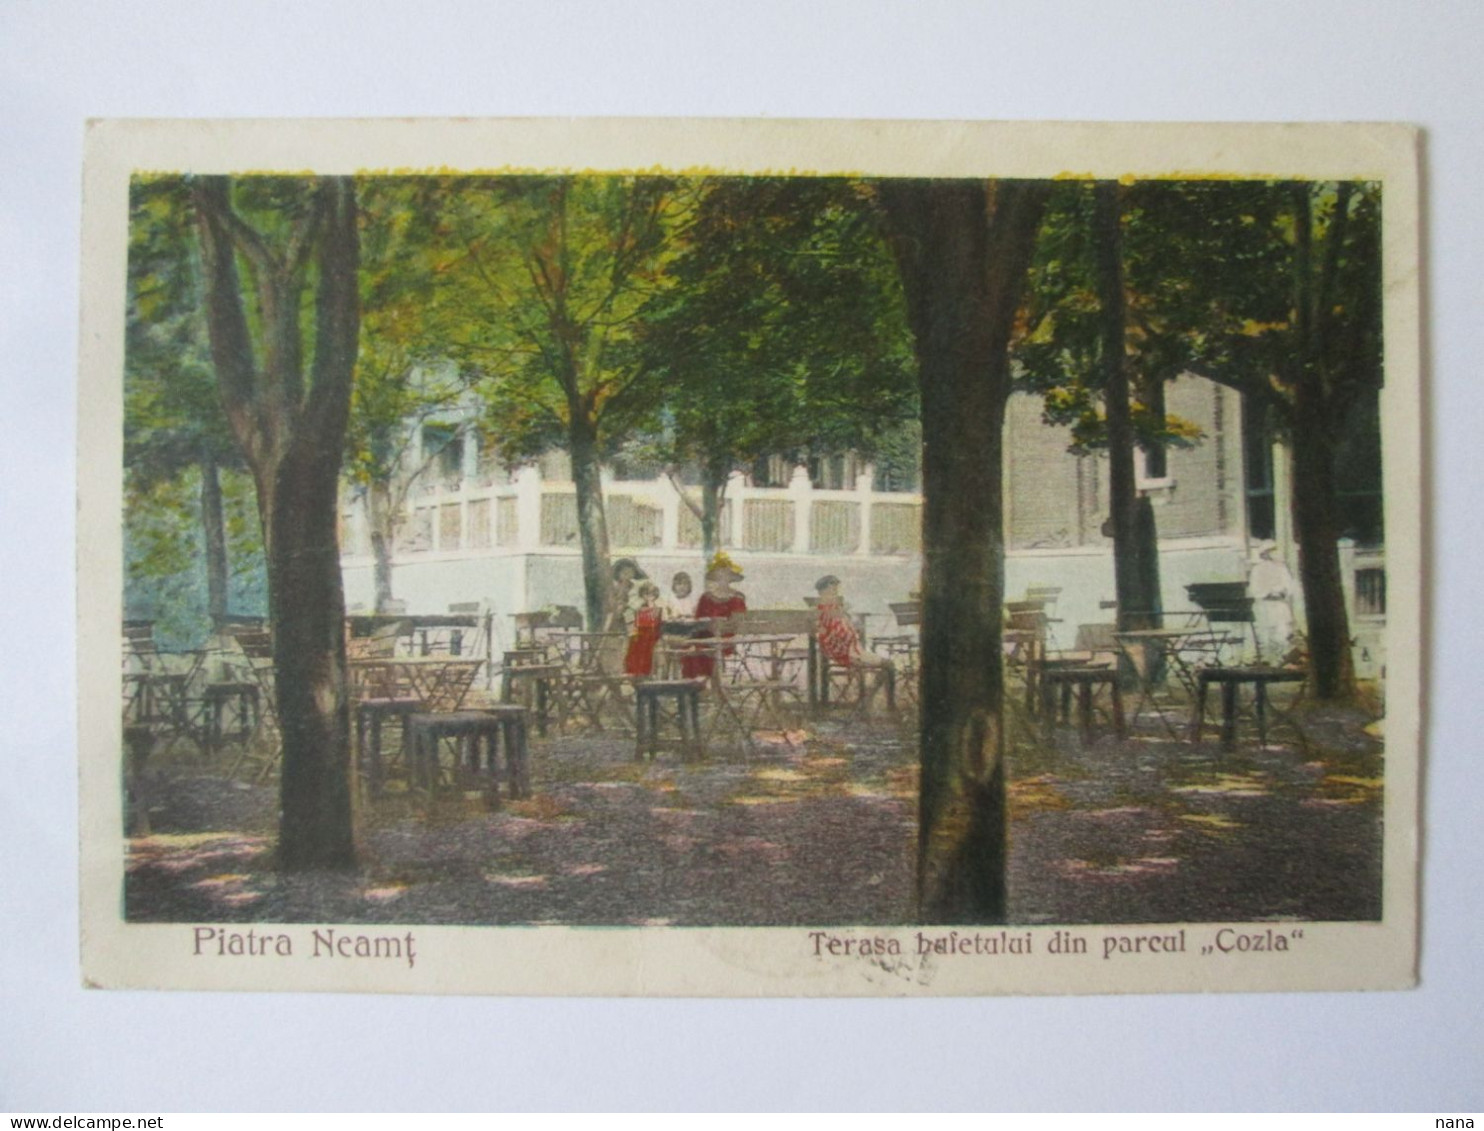 Romania-Piatra Neamț:Buffet Terrasse Cozla,carte Postale Voyage 1925/Cozla Sideboard Terrace 1925 Mailed Postcard - Romania